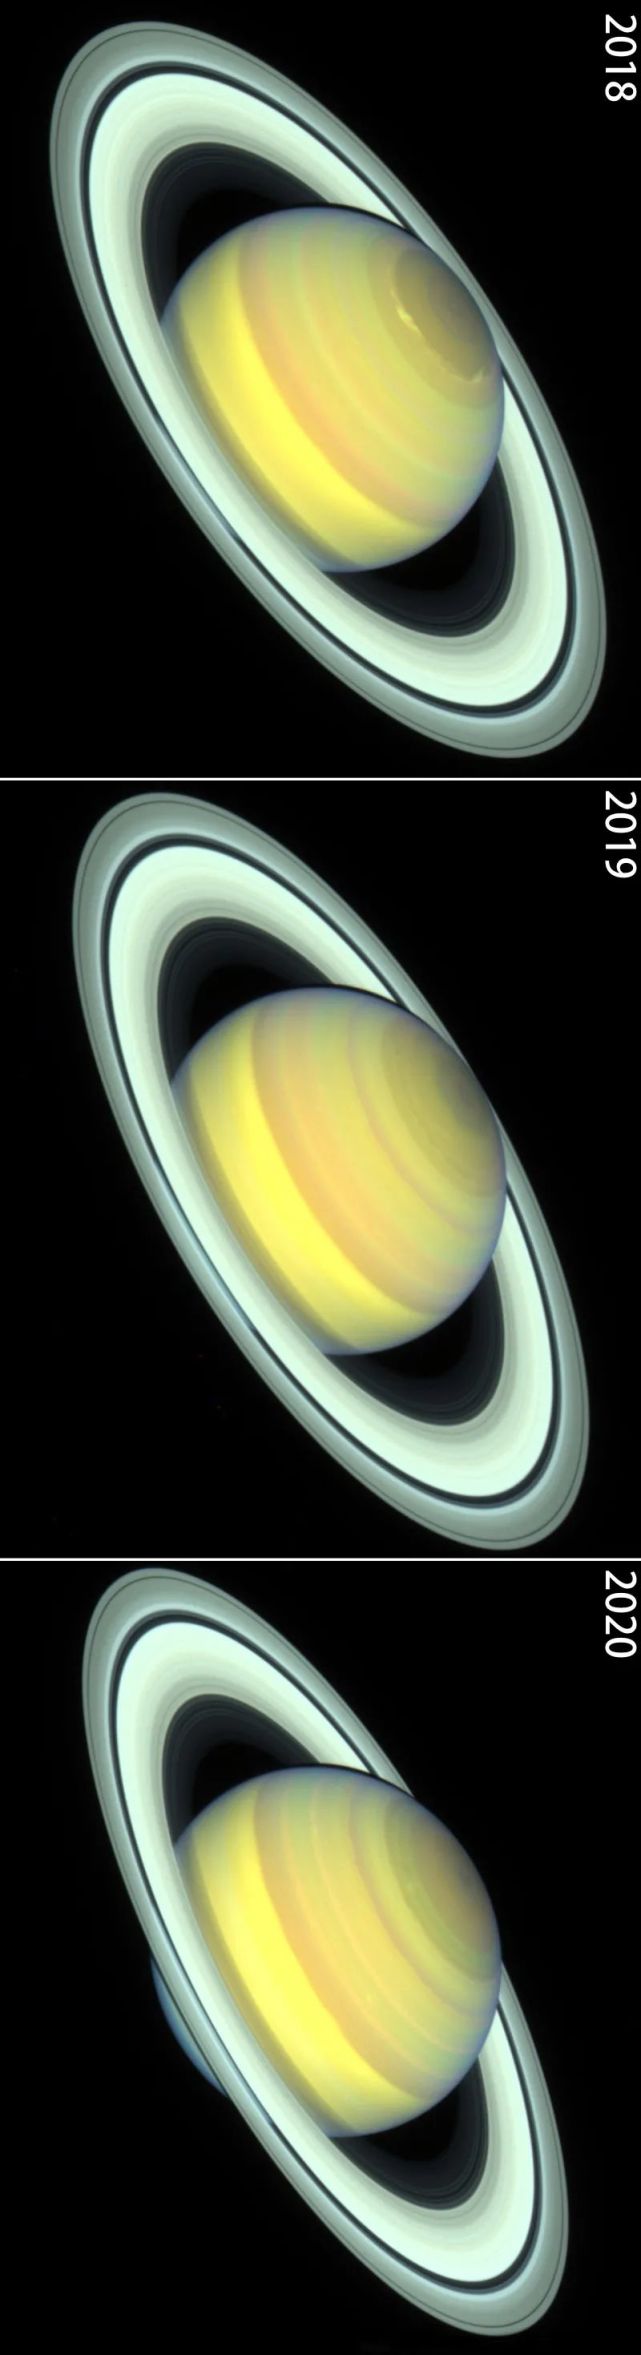 土星正在换季哈勃太空望远镜捕捉到微妙变化